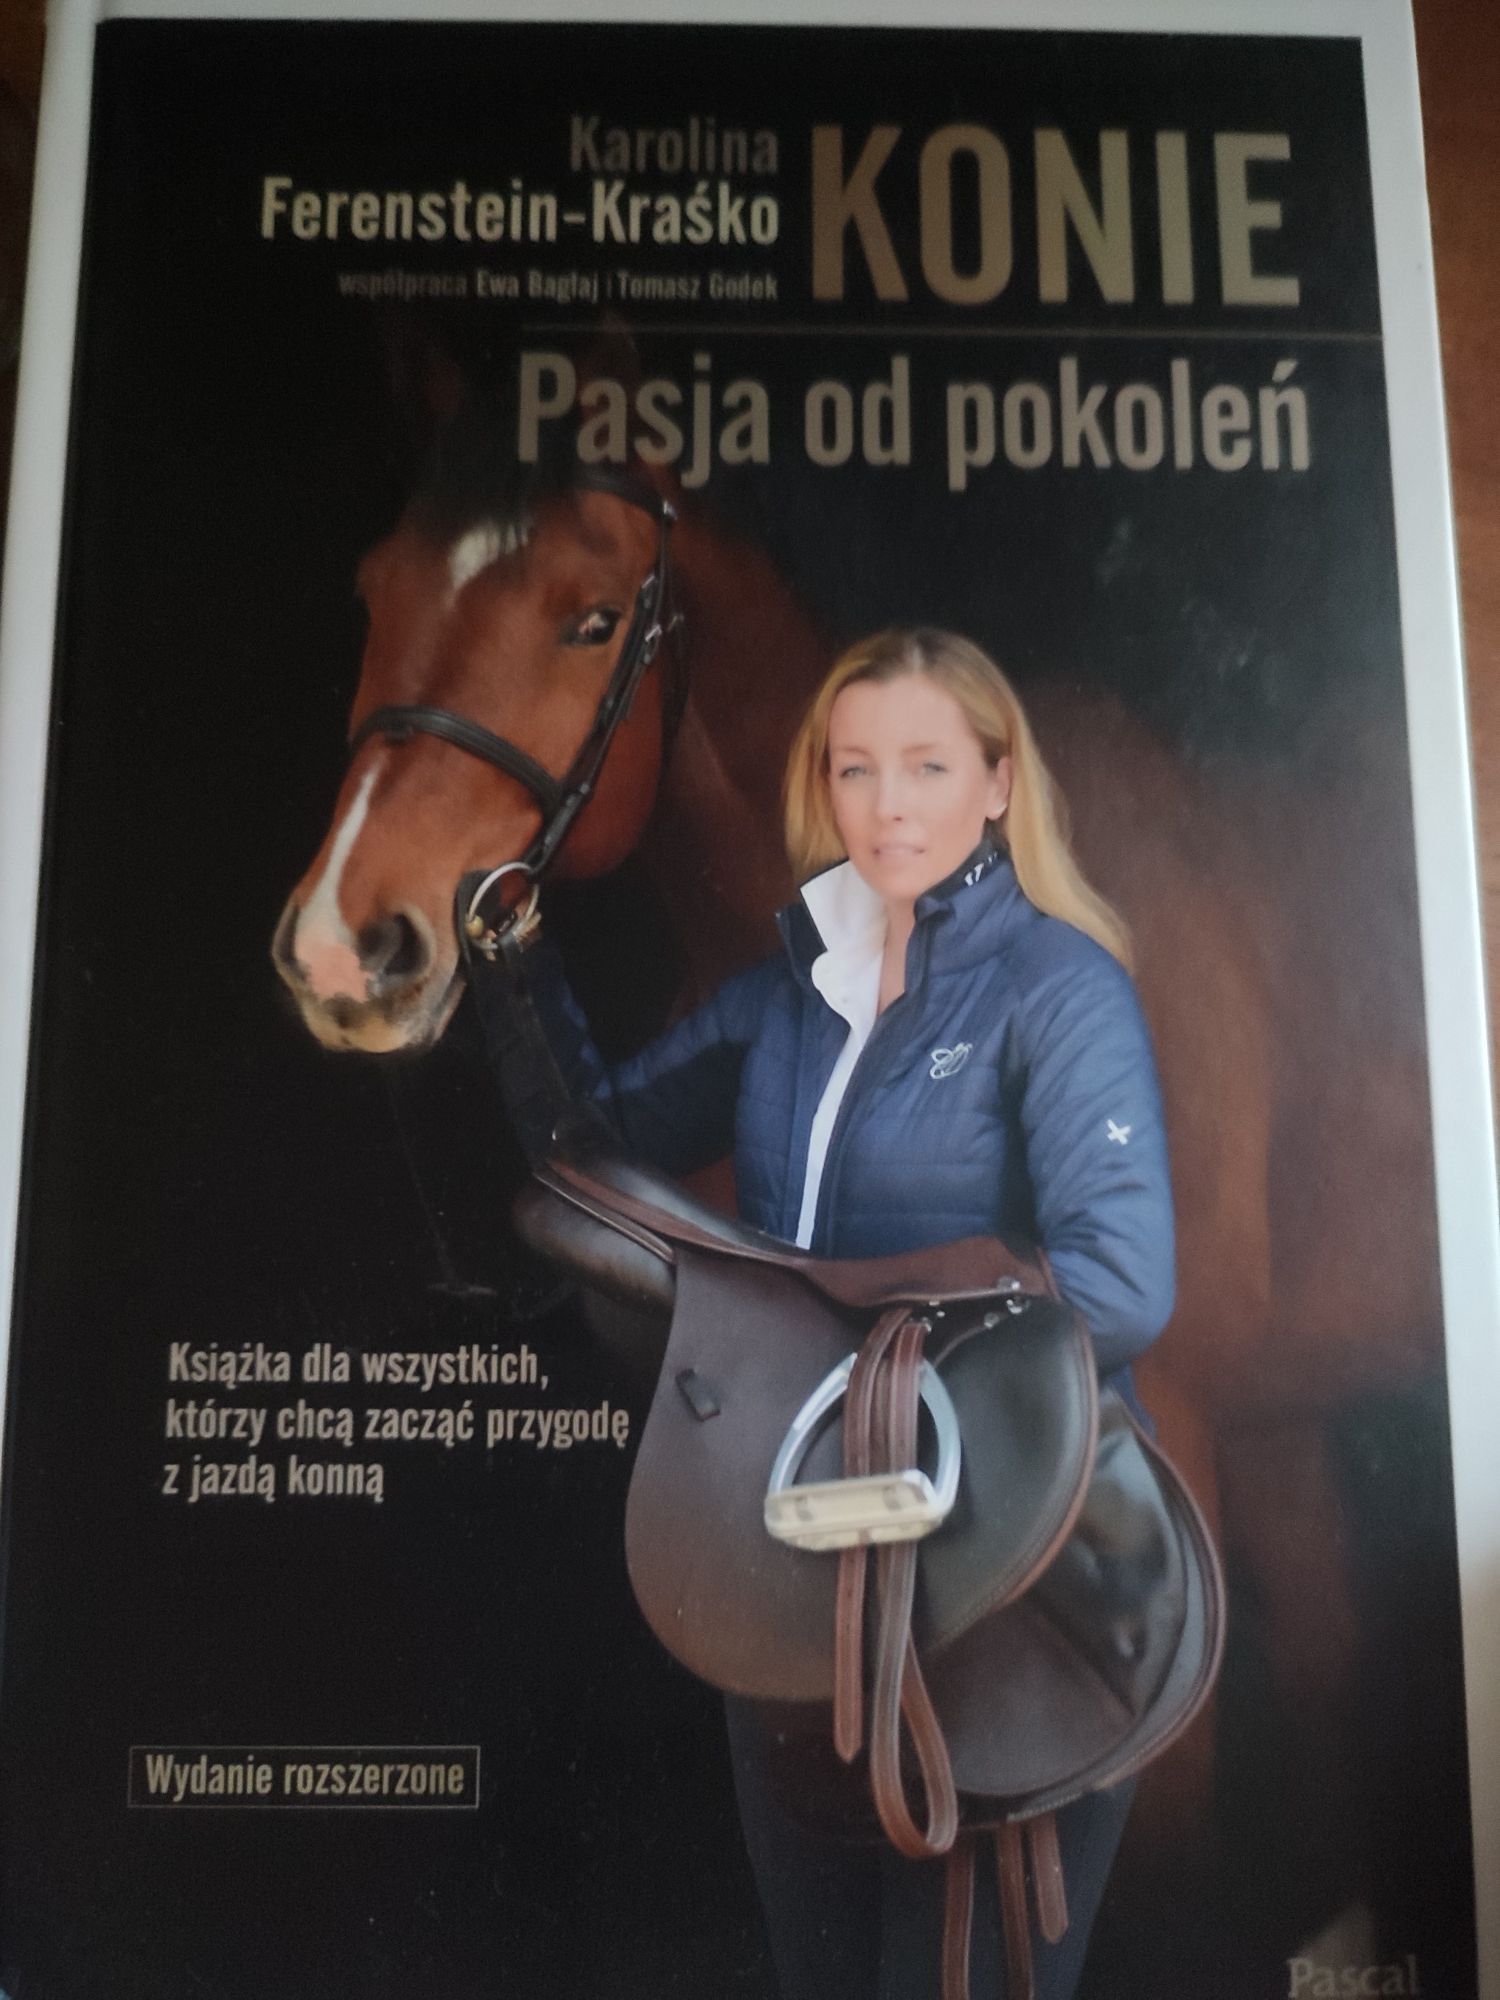 Sprzedam książkę konie pasja od pokoleń Karolina ferenstein-kraśko